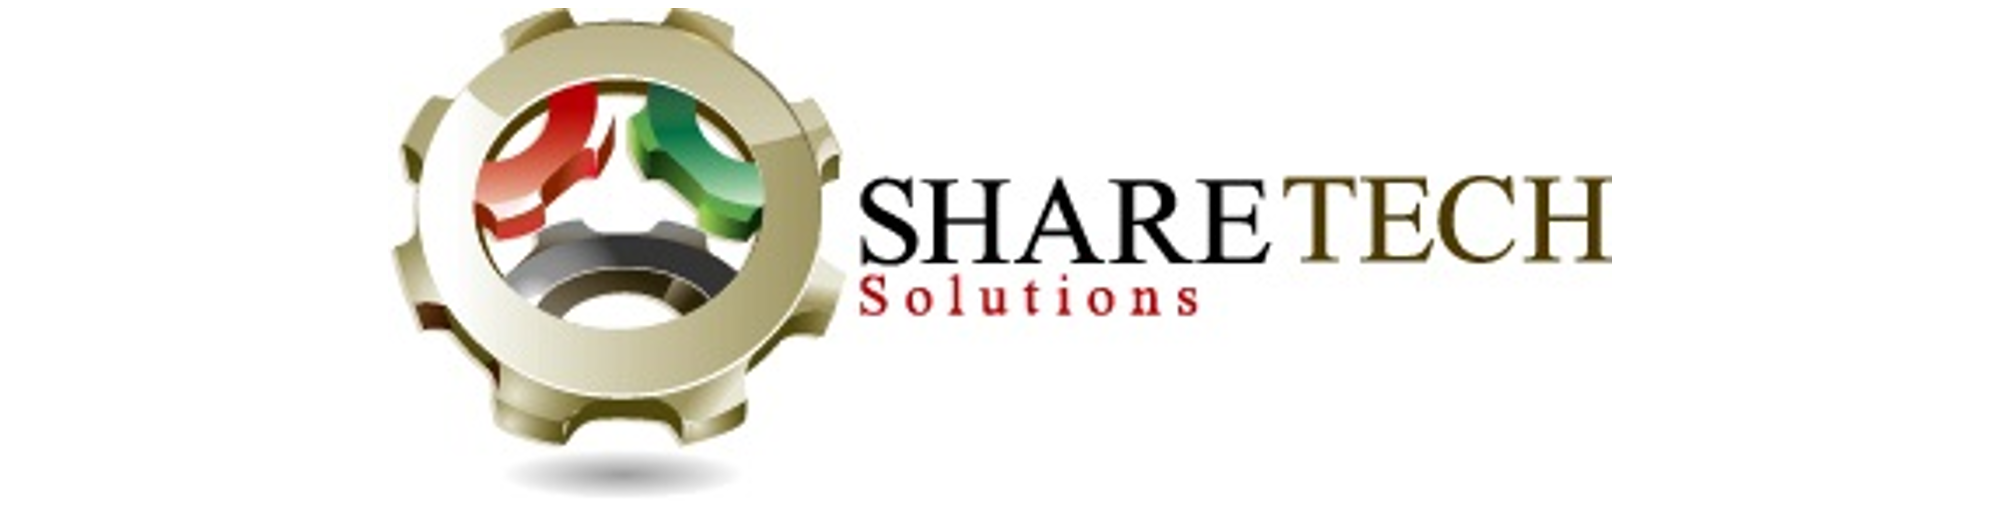 ShareTech Solutions